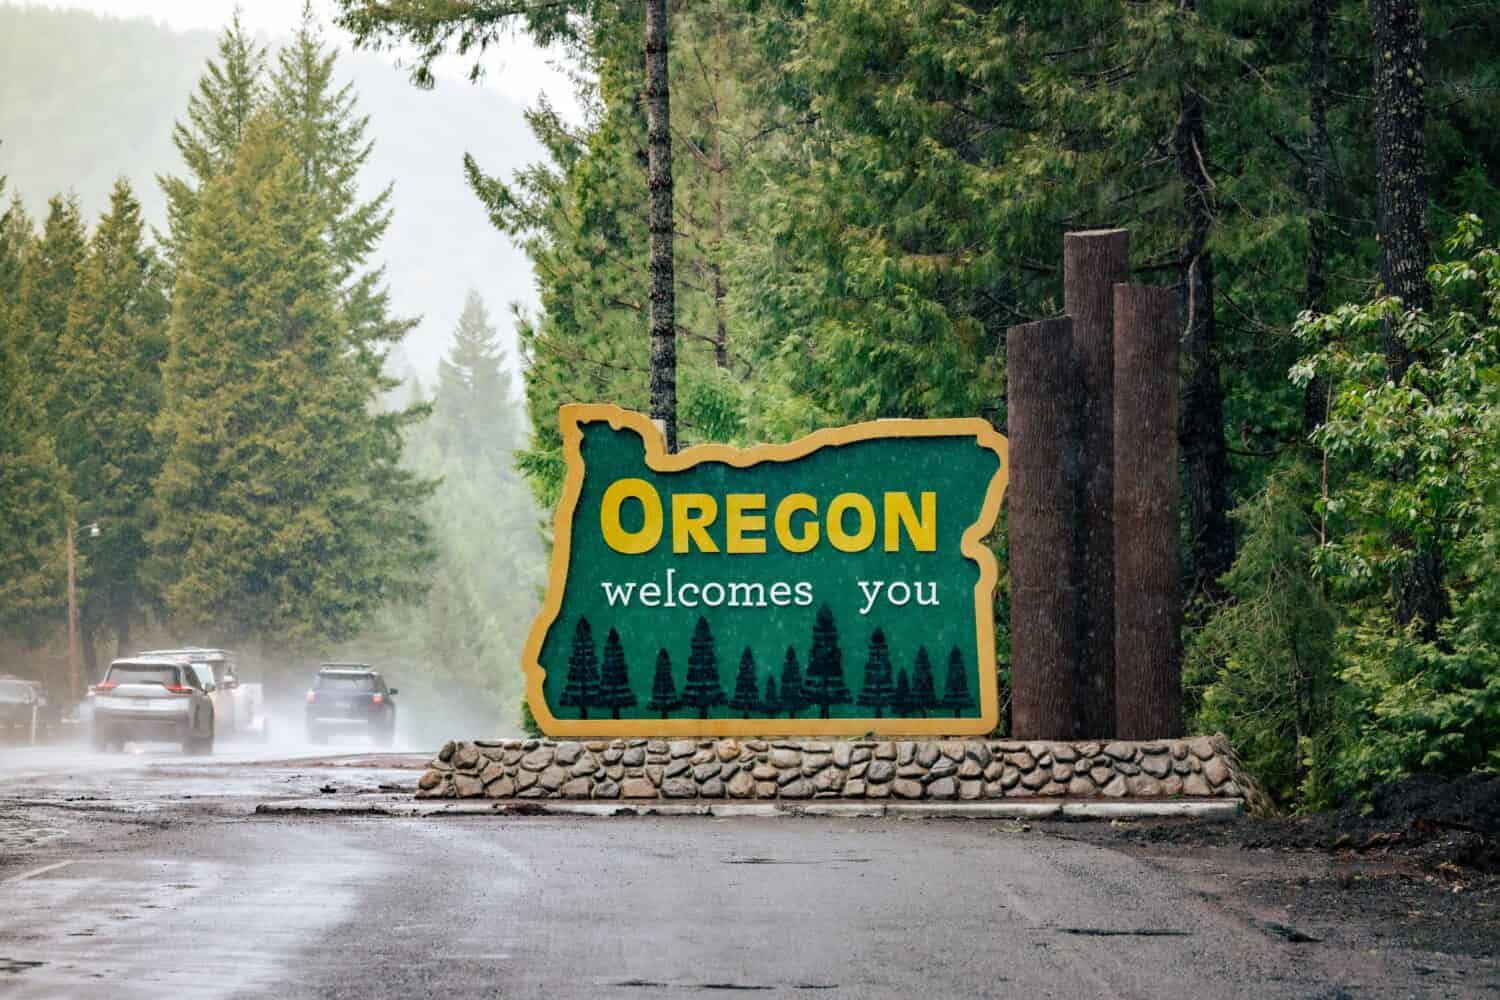 L'Oregon ti dà il benvenuto firmando al confine di stato.  US-HWY 199 Redwood Highway sotto la pioggia.